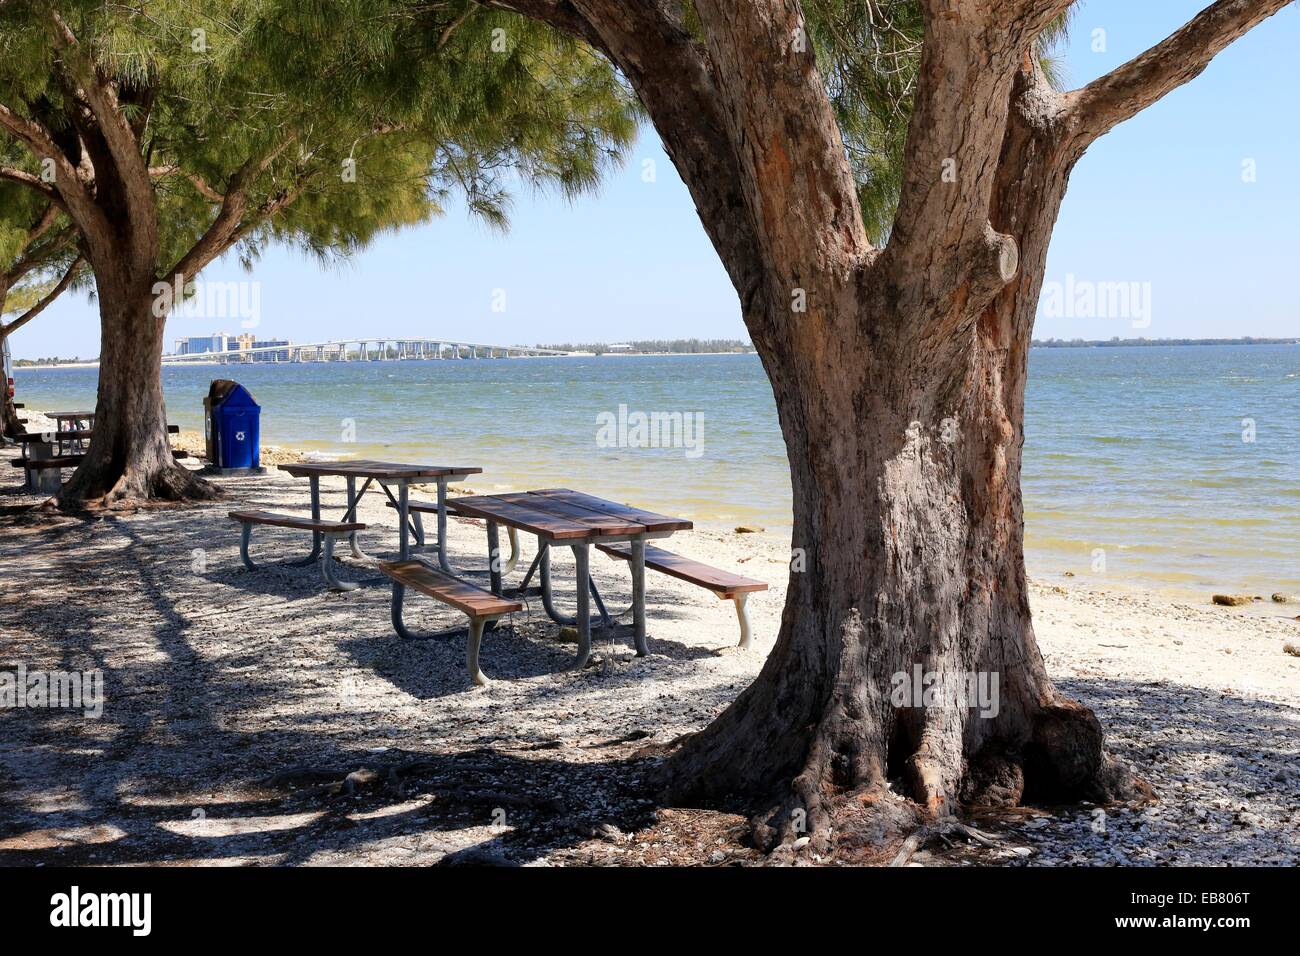 Un pique-nique park et plage sur l'île de Sanibel près de Ft. Myers en Floride, USA Banque D'Images